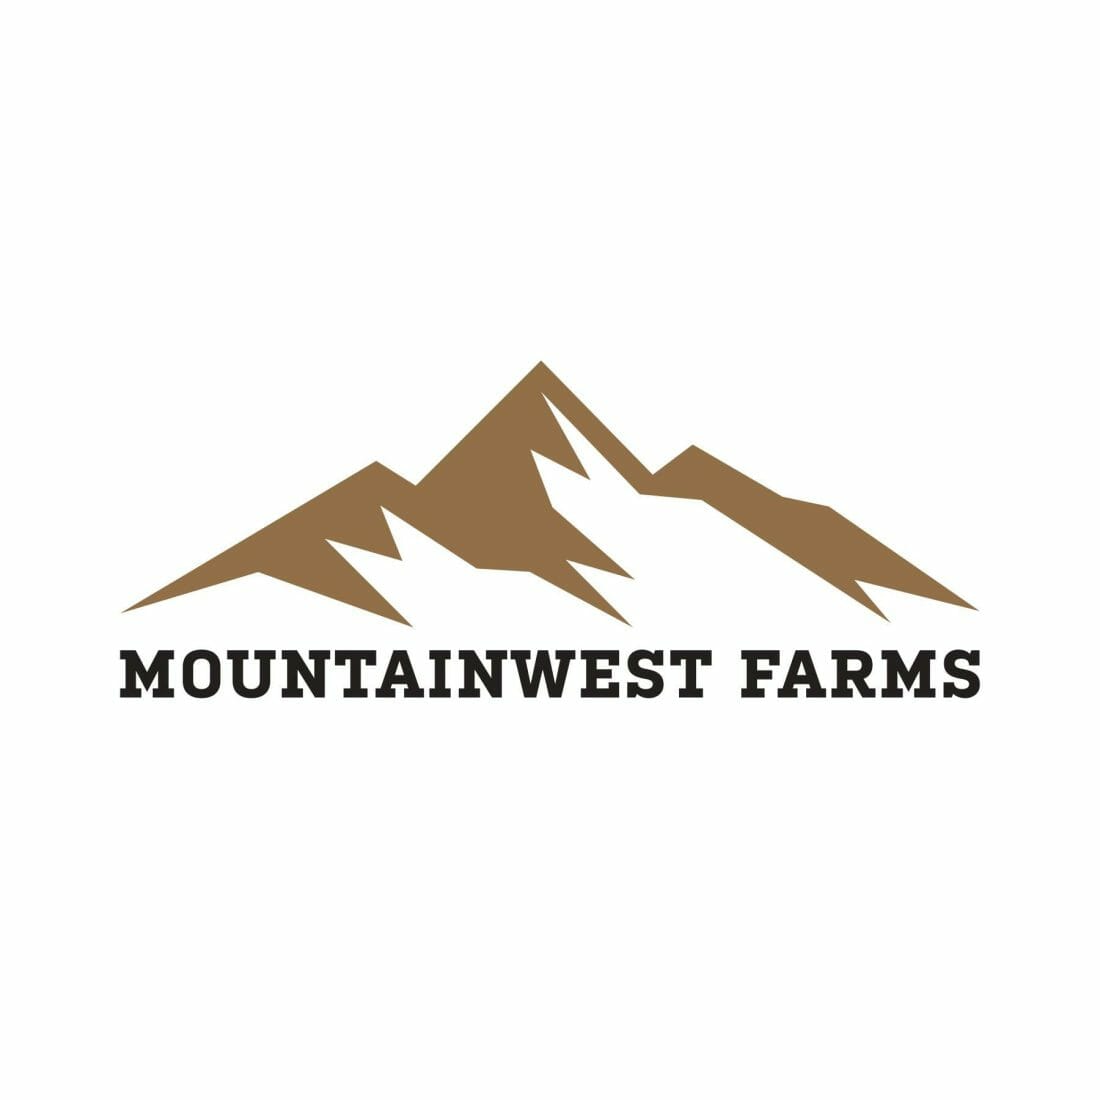 Mountainwest Farms